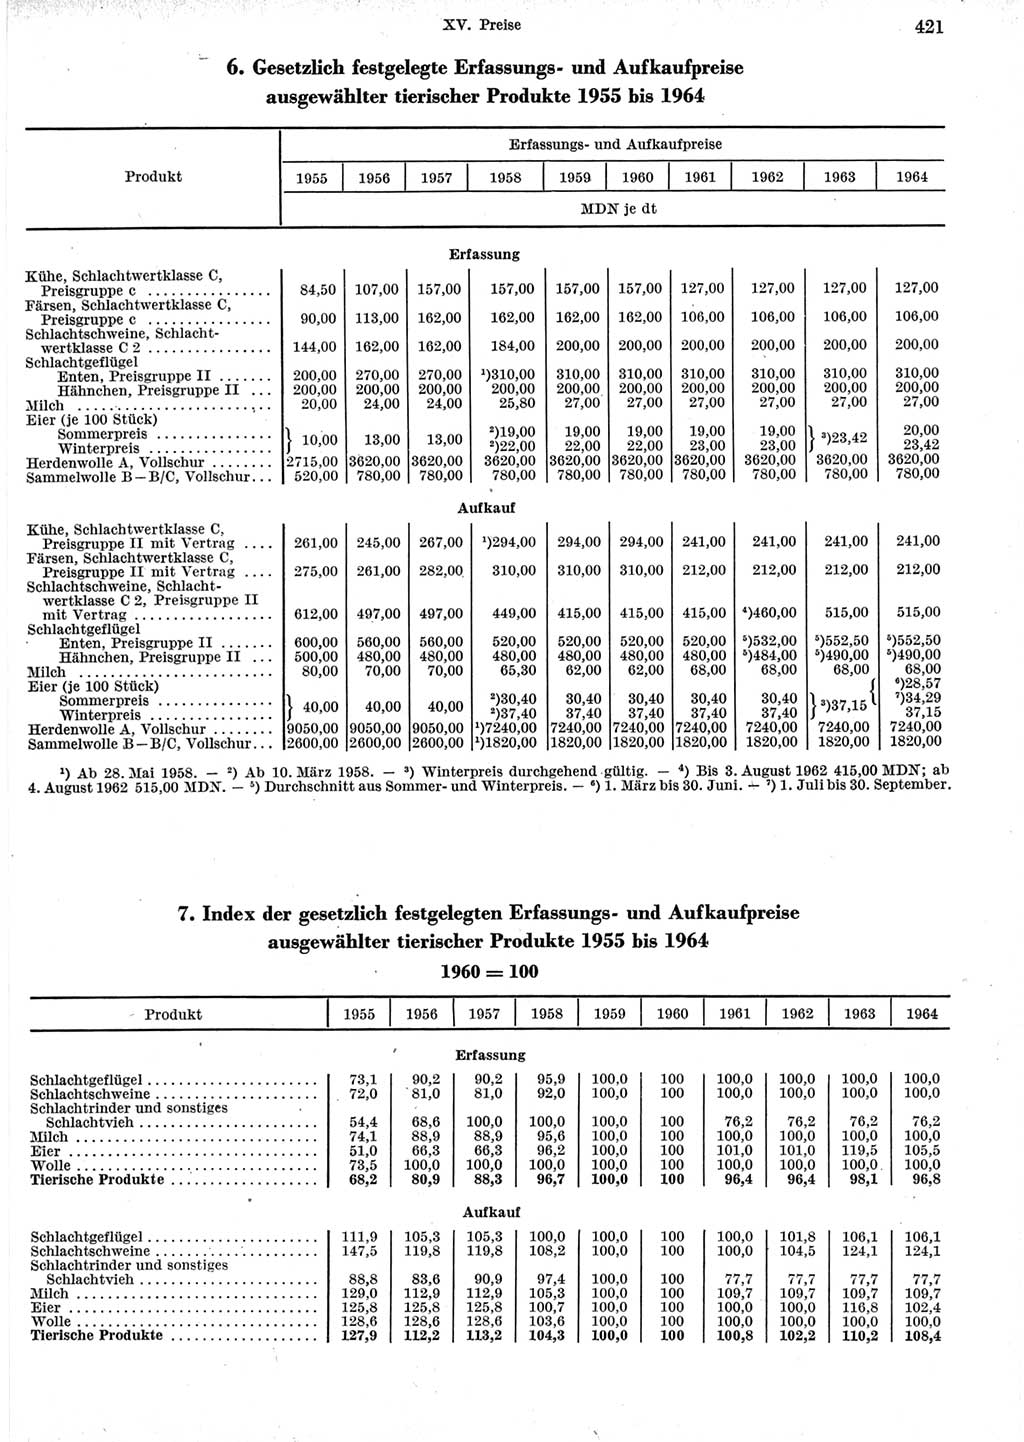 Statistisches Jahrbuch der Deutschen Demokratischen Republik (DDR) 1965, Seite 421 (Stat. Jb. DDR 1965, S. 421)